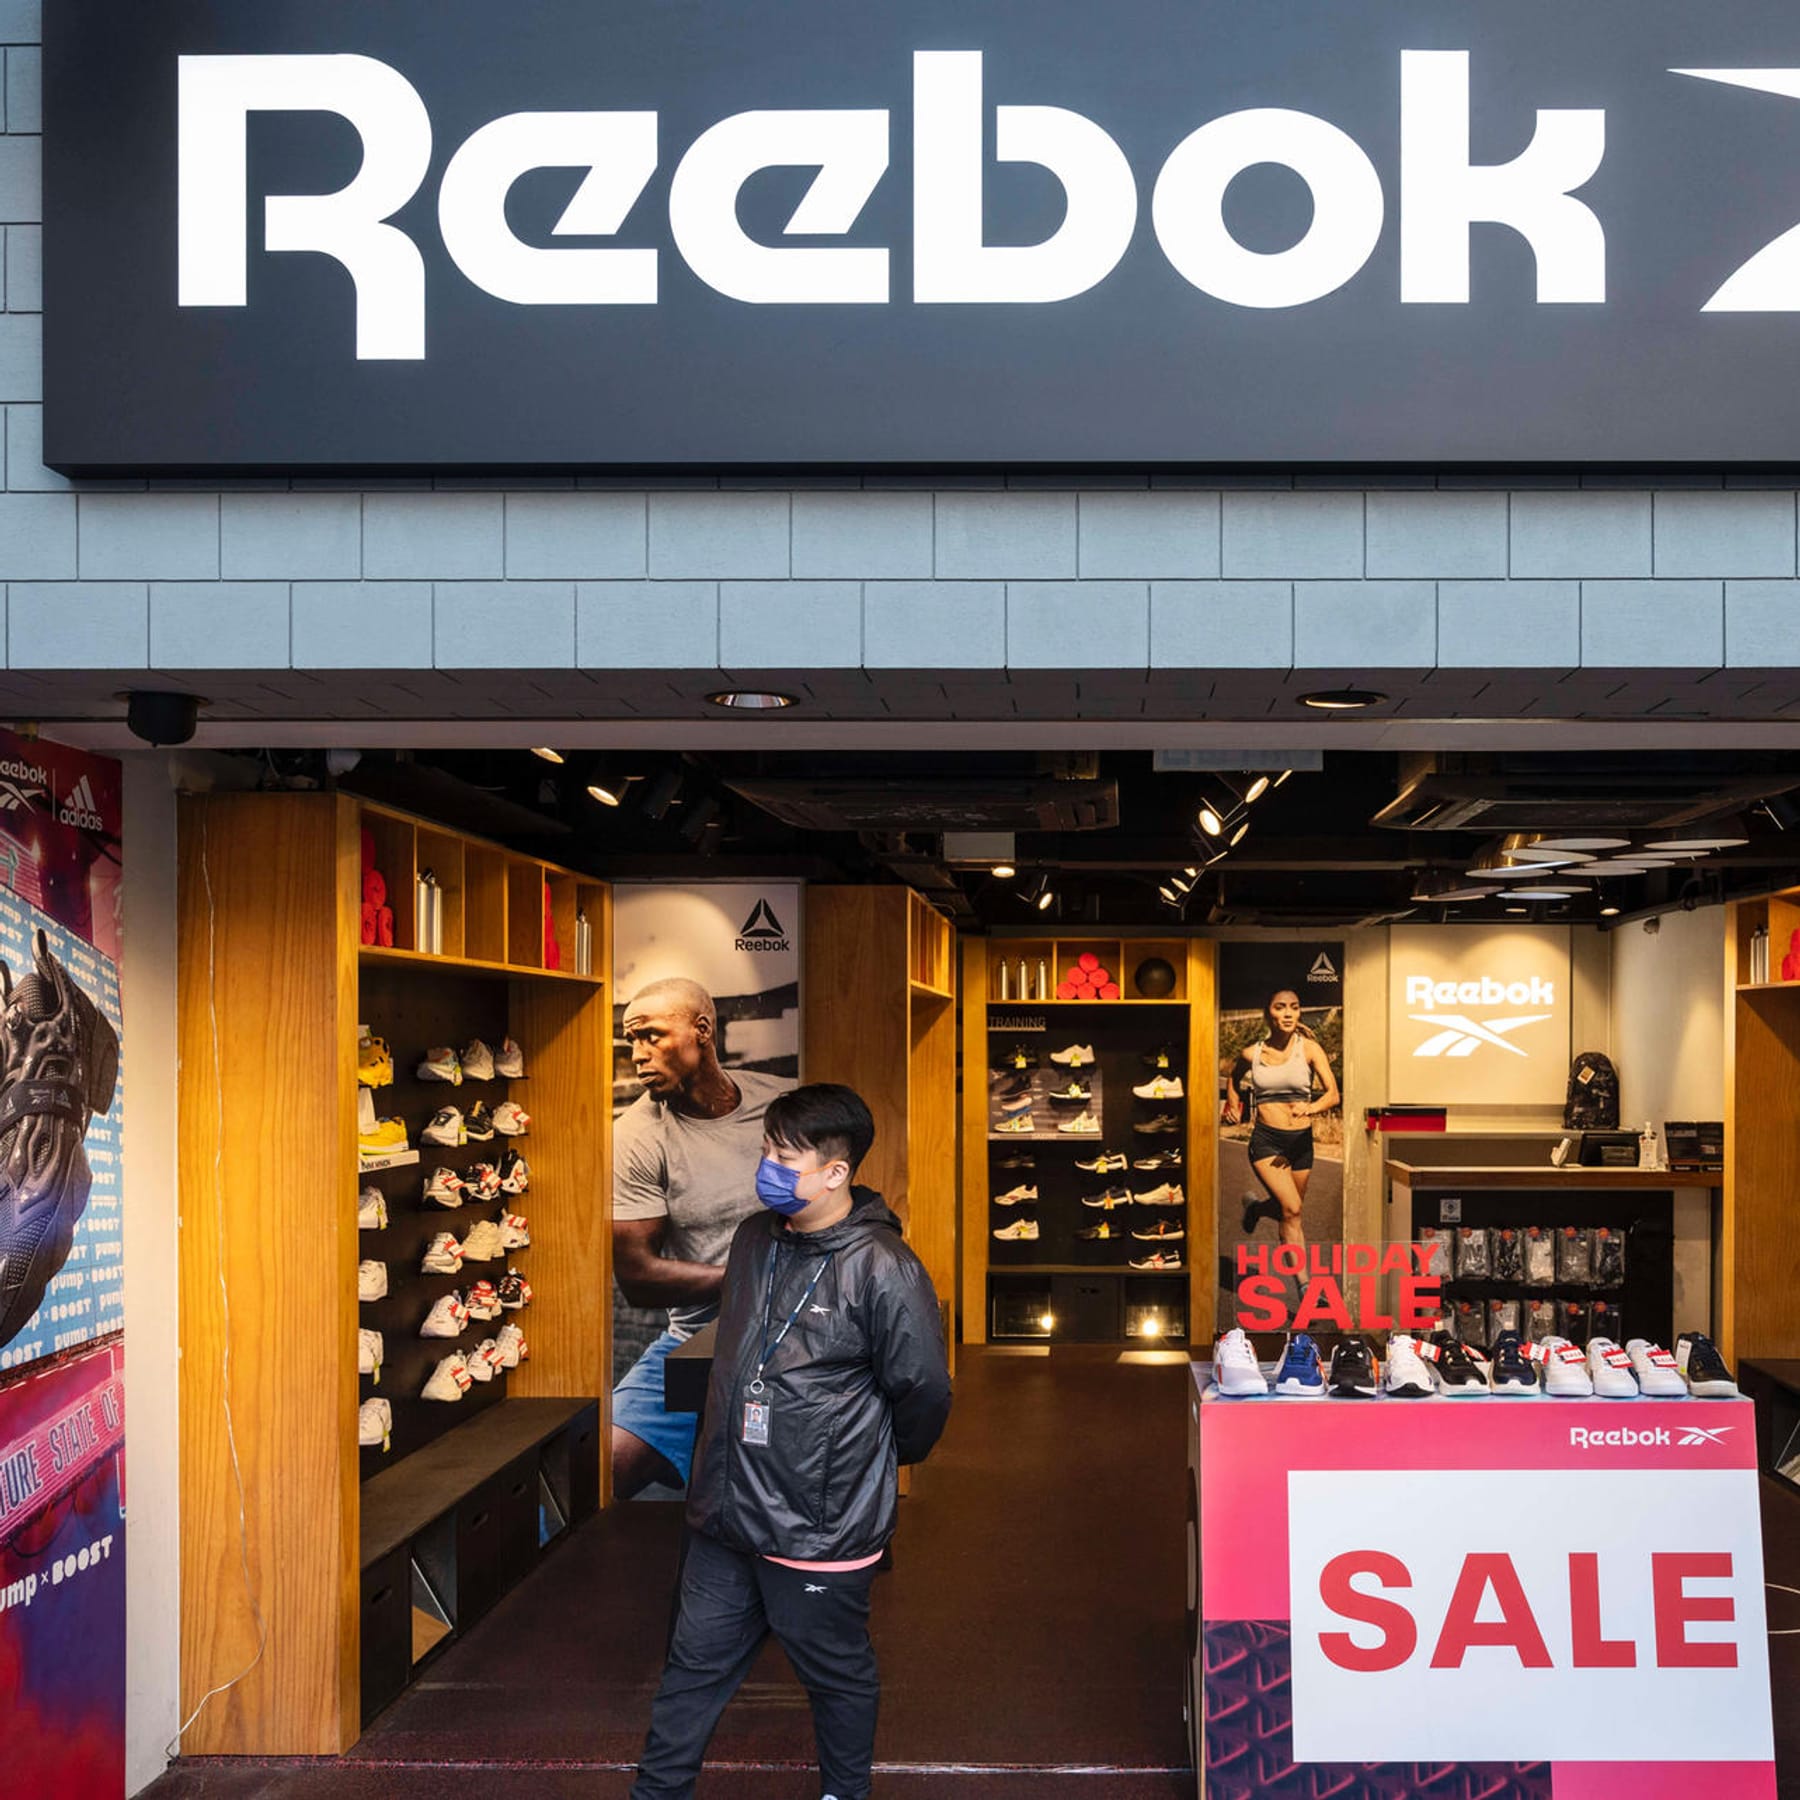 Bærbar discolor Ægte Marke von innen zerstört": Wie Adidas Reebok seit Jahren ausbluten lässt